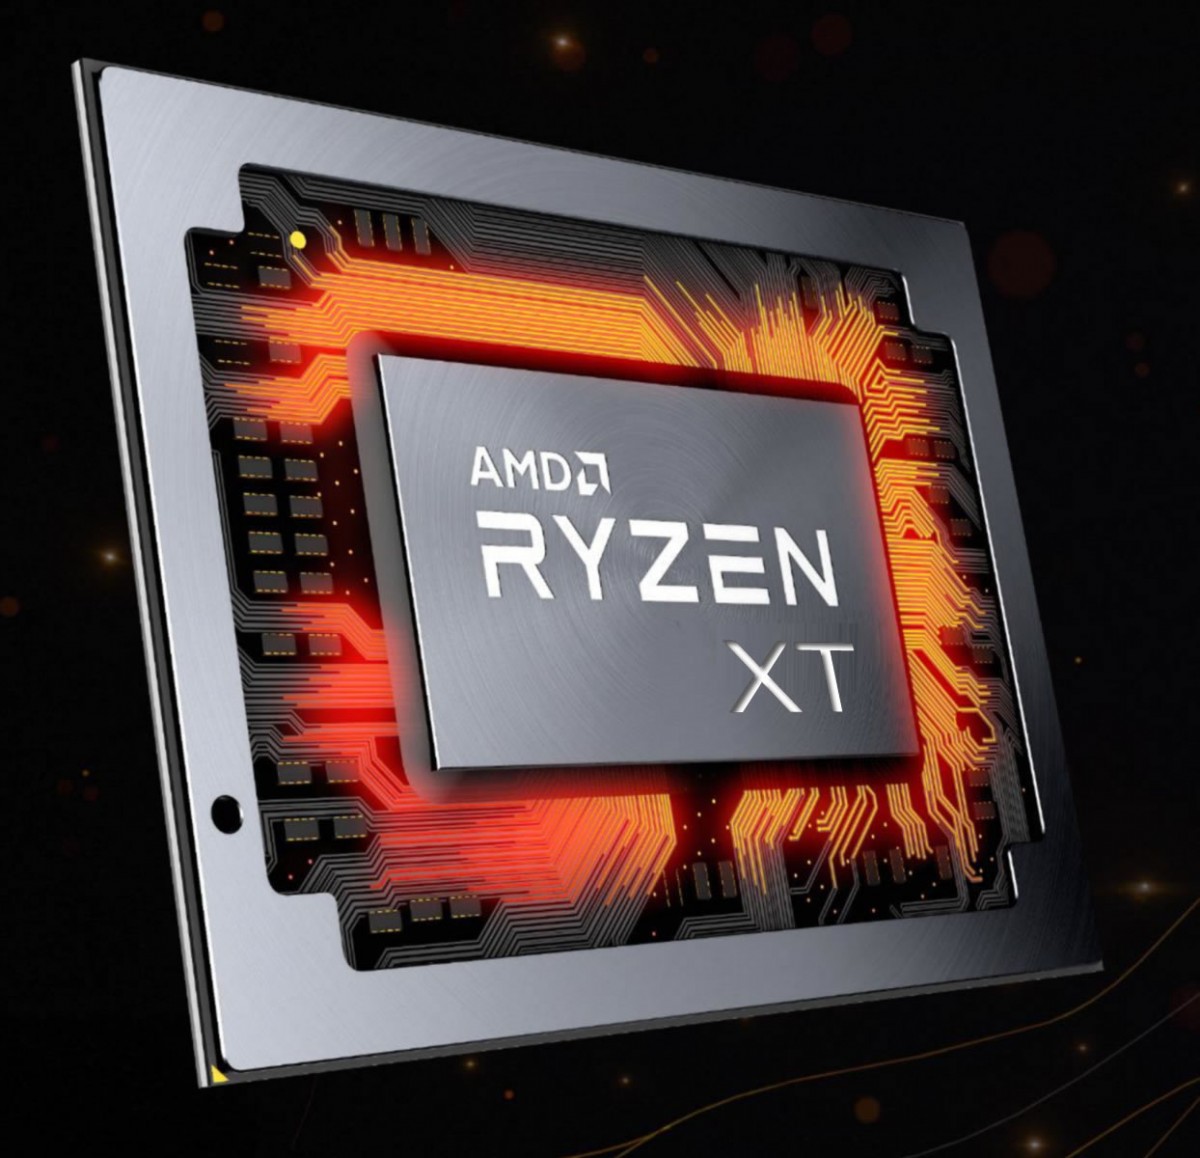 AMD Ryzen 9 3900XT, Ryzen 7 3800XT et Ryzen 5 3600XT : Les spécifications complètes et les prix